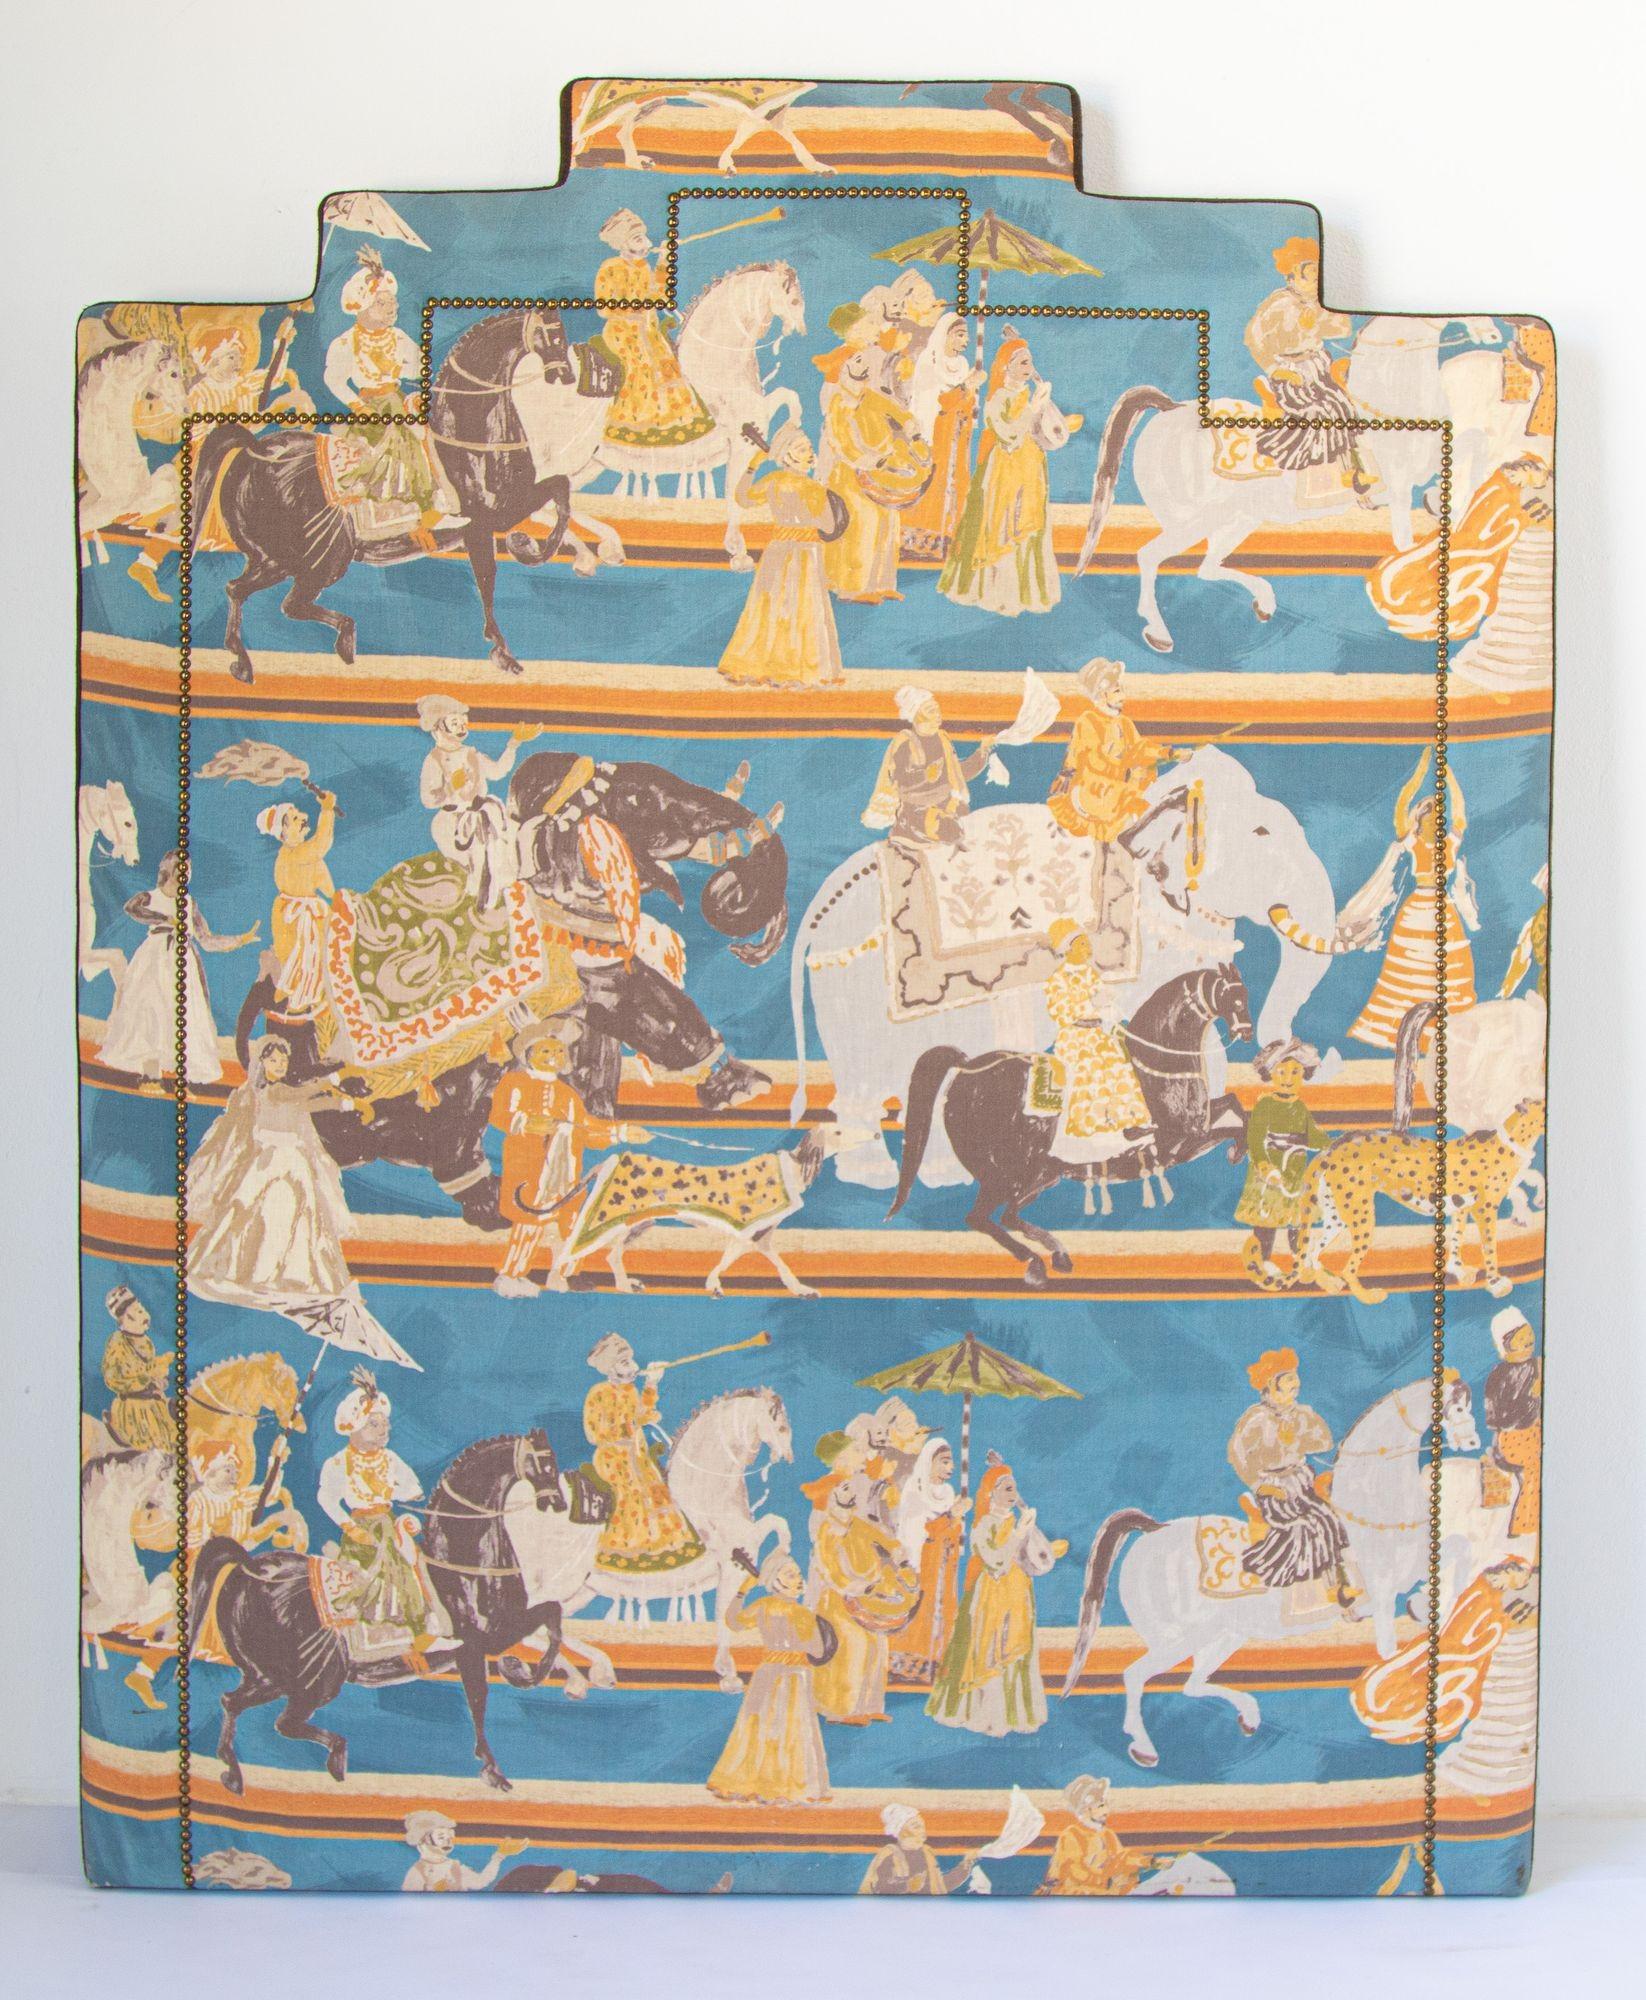 Orientalische asiatischen Luxus gepolstert Kopfteil mit Mughal Szene Maharadschas auf Pferd und Elefanten, Indien.
Dieses schöne Jaipur Rajput Szene Luxus gepolstertes Kopfteil ist mit Nieten Detaillierung beendet. 
Luxuriöses, gewölbtes Kopfteil